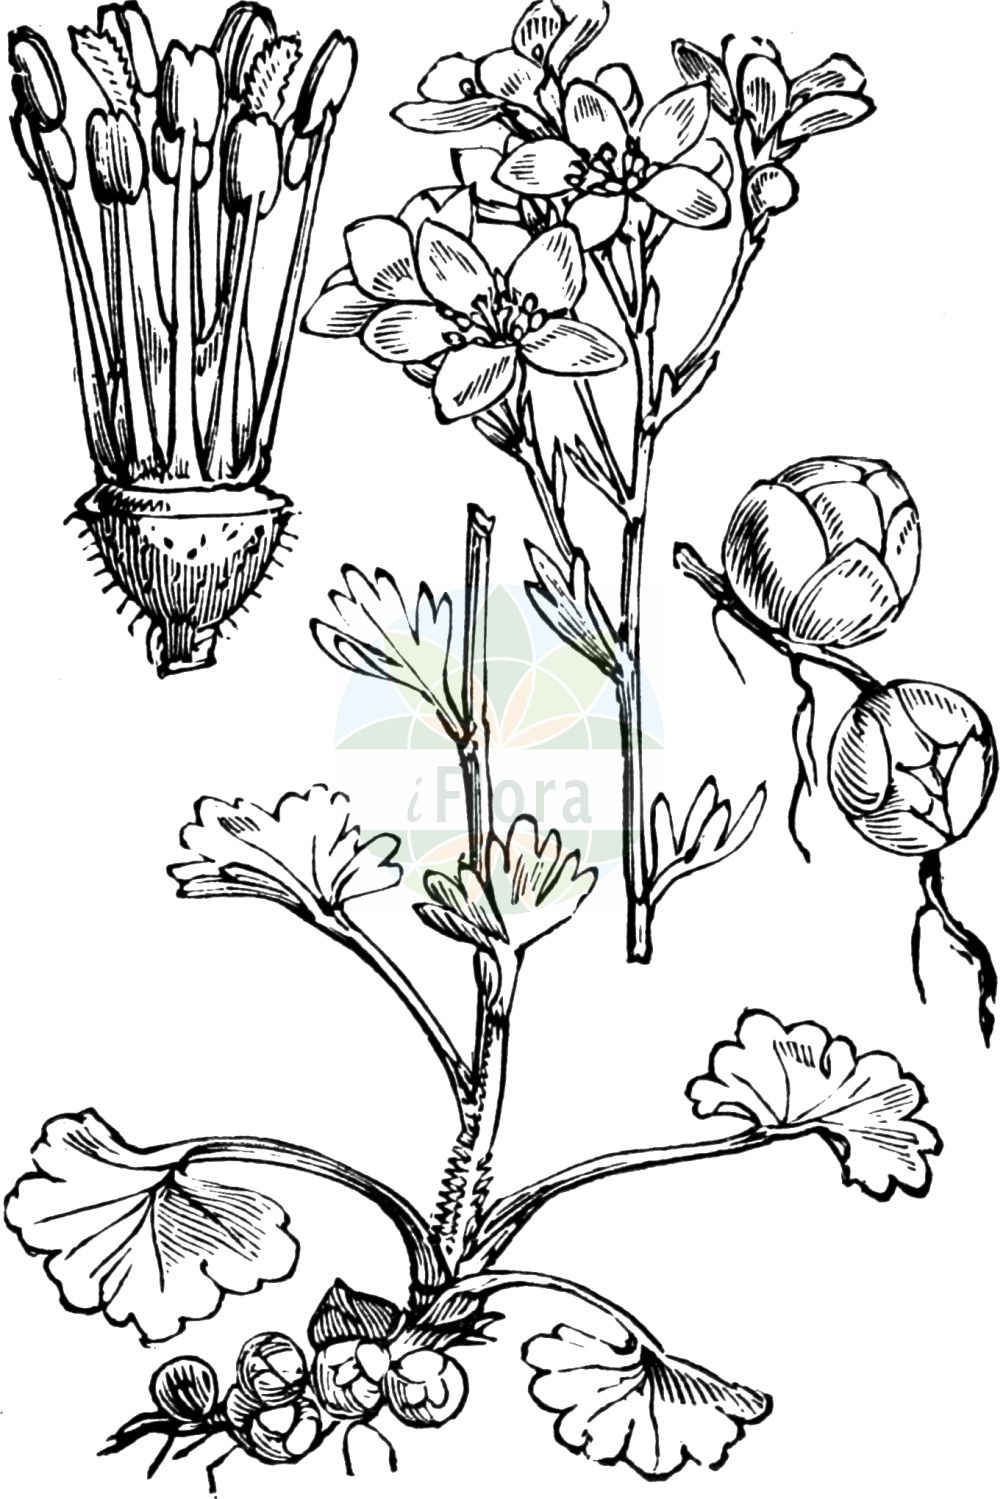 Historische Abbildung von Saxifraga granulata (Knöllchen-Steinbrech - Meadow Saxifrage). Das Bild zeigt Blatt, Bluete, Frucht und Same. ---- Historical Drawing of Saxifraga granulata (Knöllchen-Steinbrech - Meadow Saxifrage). The image is showing leaf, flower, fruit and seed.(Saxifraga granulata,Knöllchen-Steinbrech,Meadow Saxifrage,Saxifraga granulata,Knoellchen-Steinbrech,Koernchen-Steinbrech,Meadow Saxifrage,Bulbous Saxifrage,Fair Maids Of France,Saxifraga,Steinbrech,Saxifrage,Saxifragaceae,Steinbrechgewächse,Saxifrage family,Blatt,Bluete,Frucht,Same,leaf,flower,fruit,seed,Fitch et al. (1880))